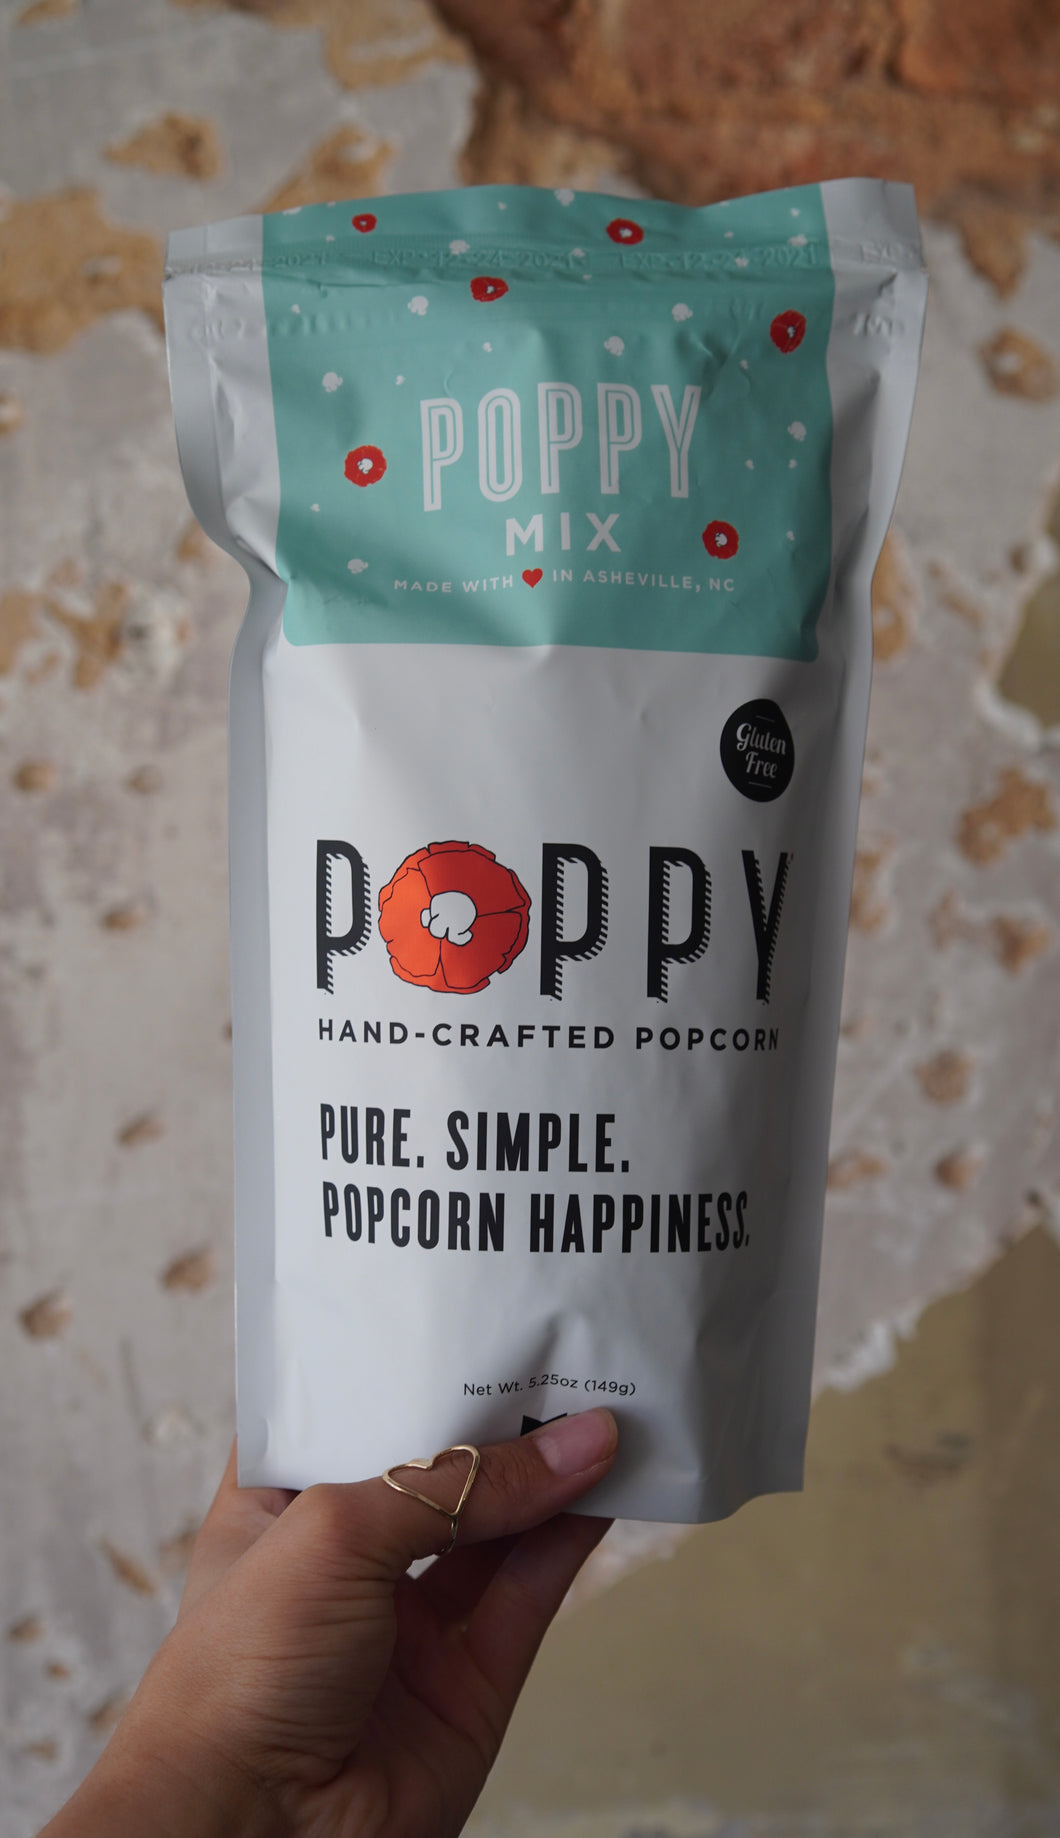 Poppy’s Poppy Mix